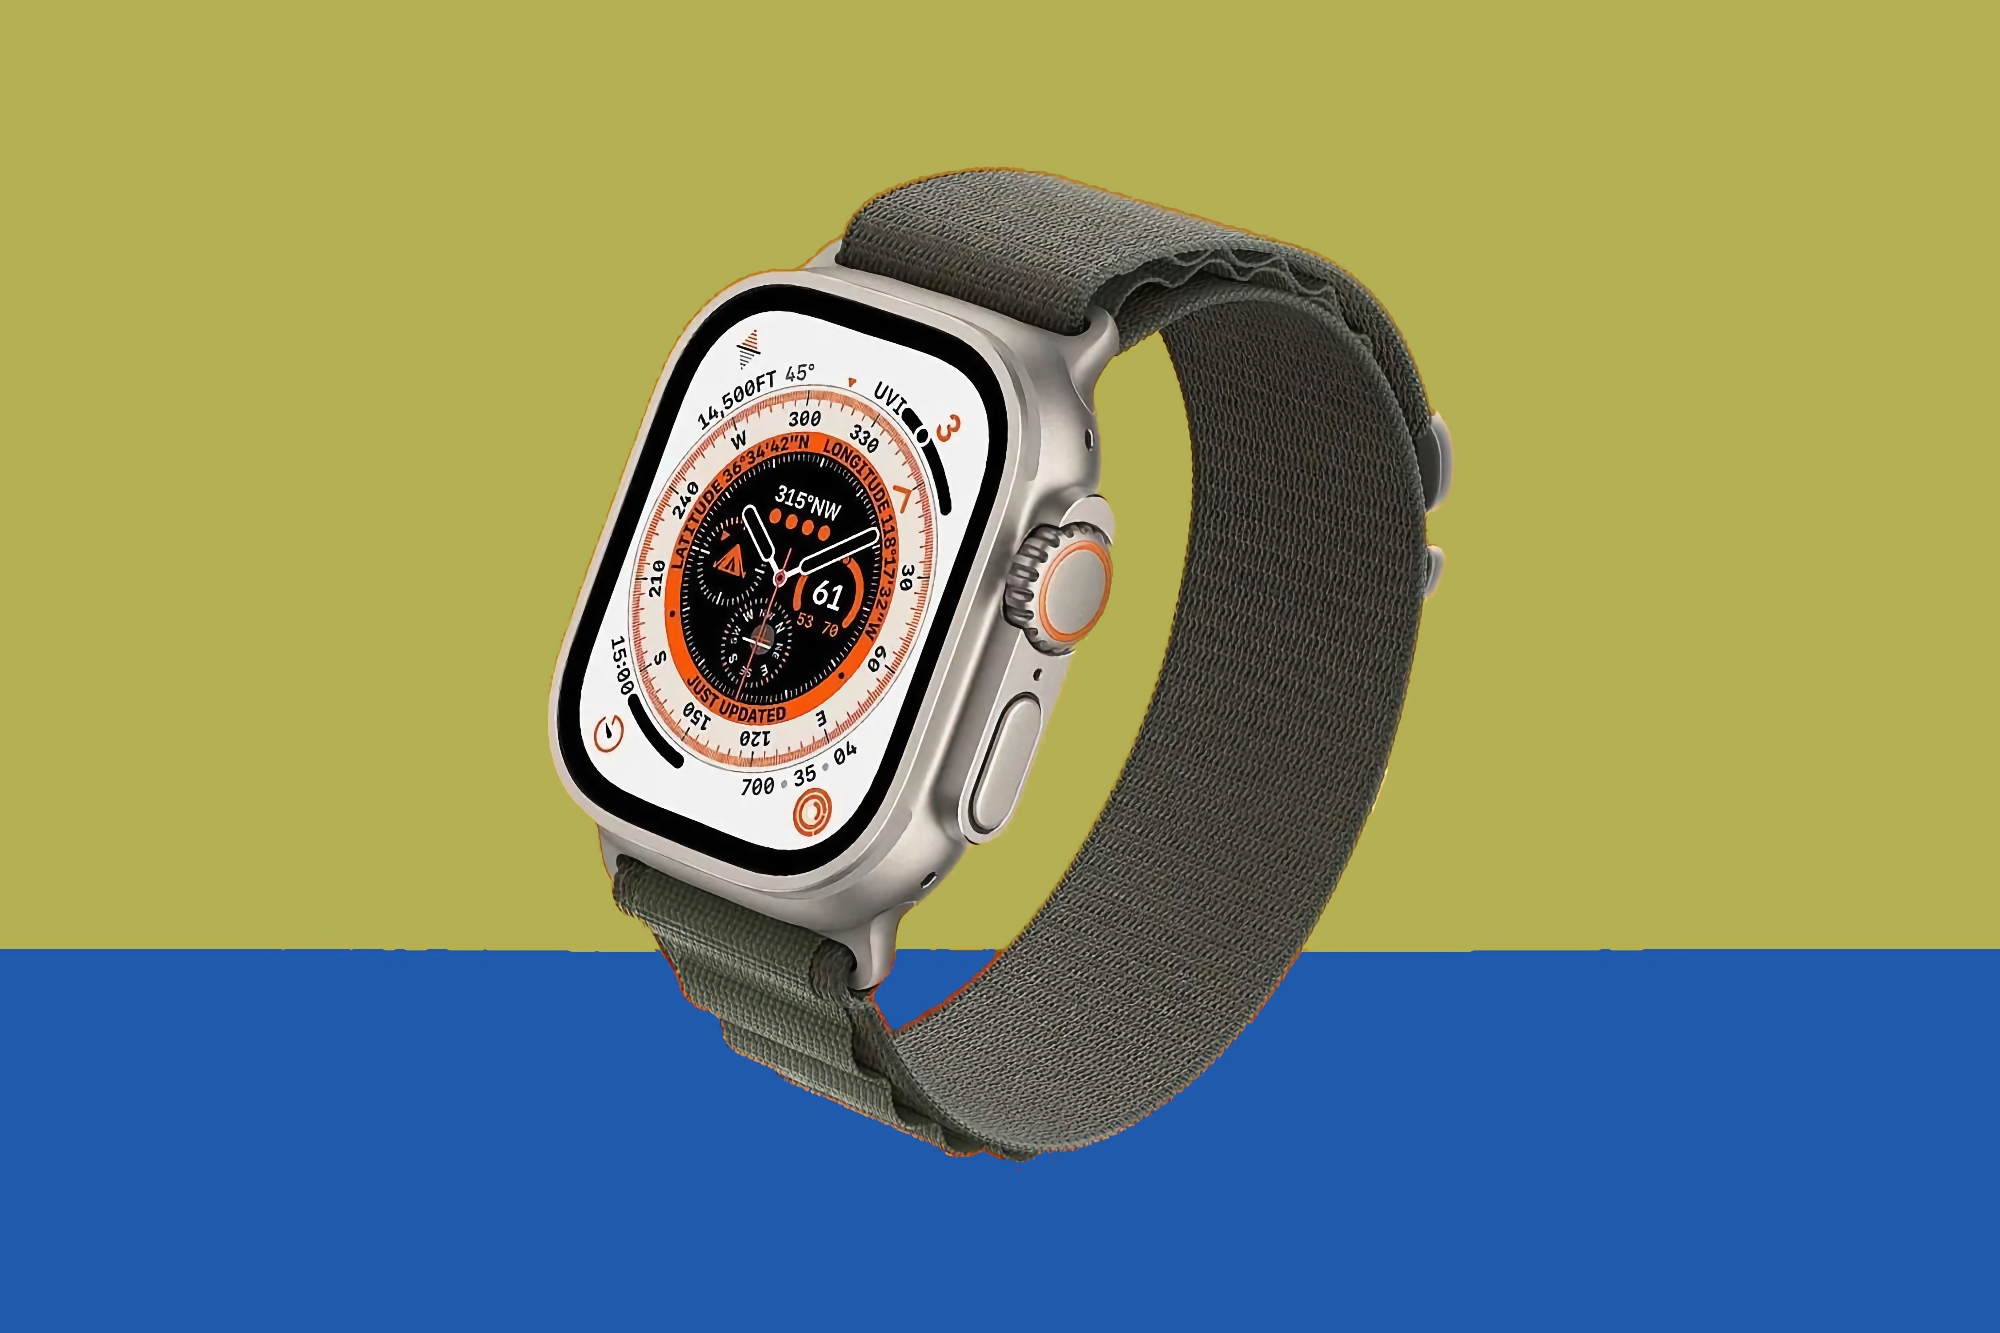 Apple Watch Ultra 2 kan köpas på Amazon med en rabatt på $ 40